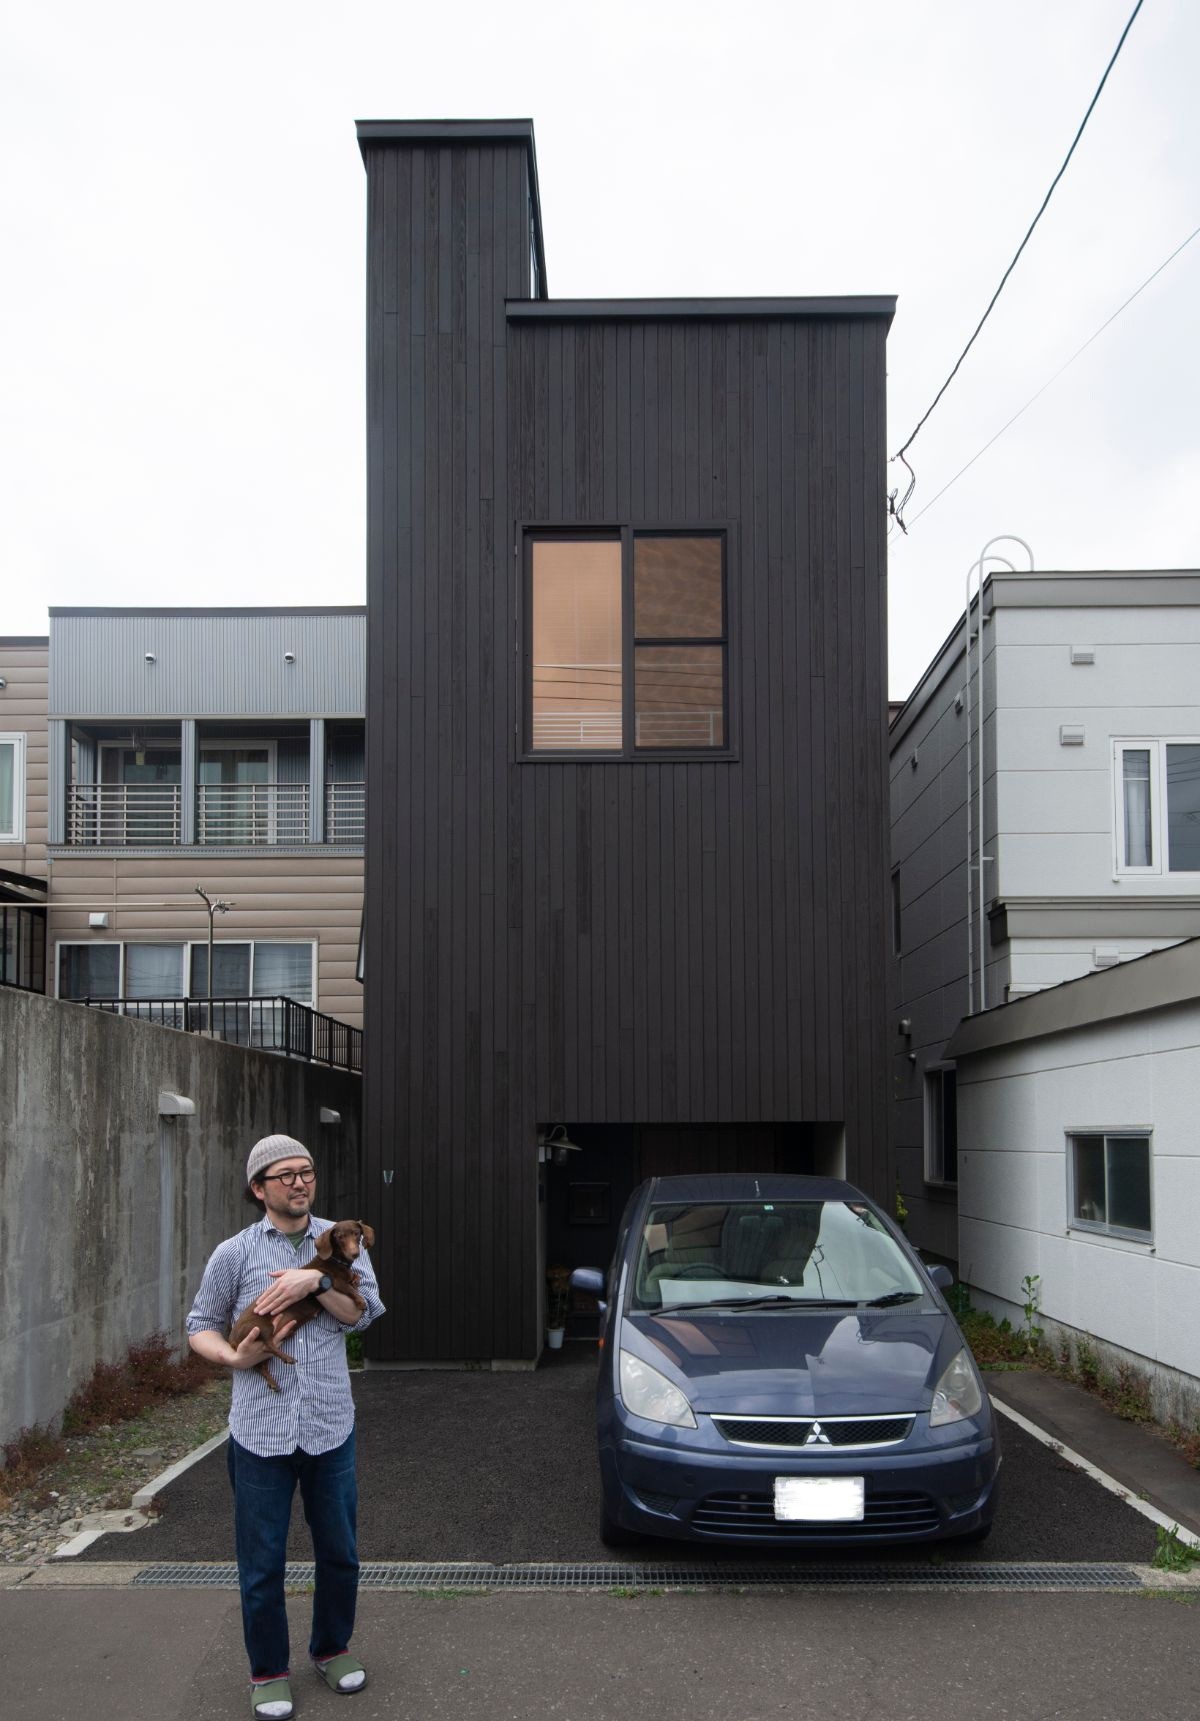 建築家が考えた欠陥住宅 ストレス満載の家を大改造 札幌 ｓ邸 いえズーム Iezoom